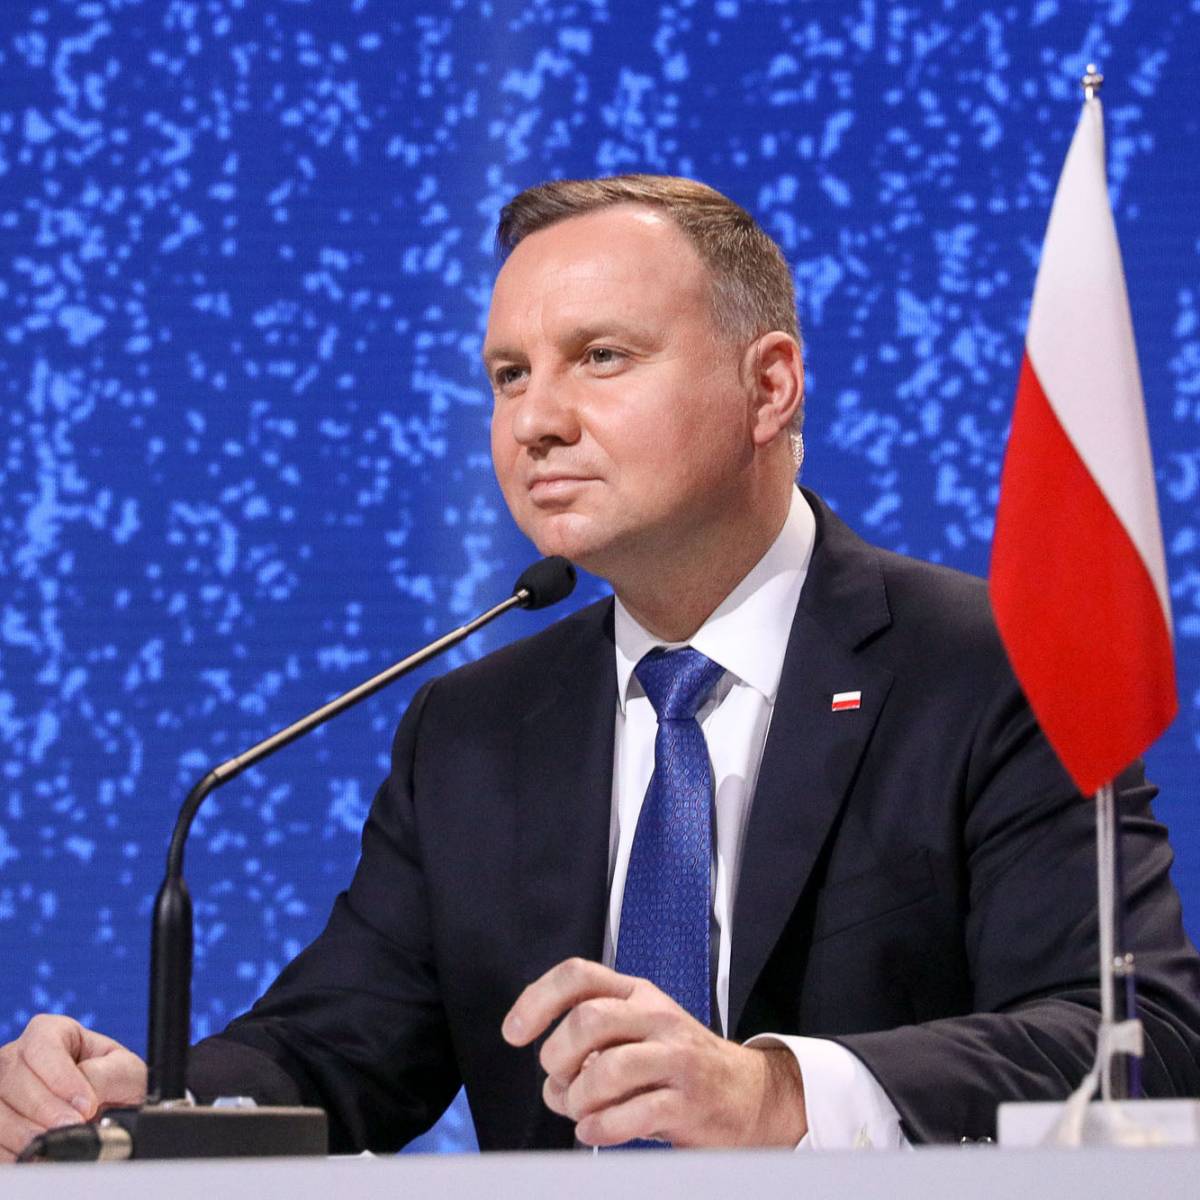 Польша идёт по пути основного противника - России: страна загоняет себя в изоляцию